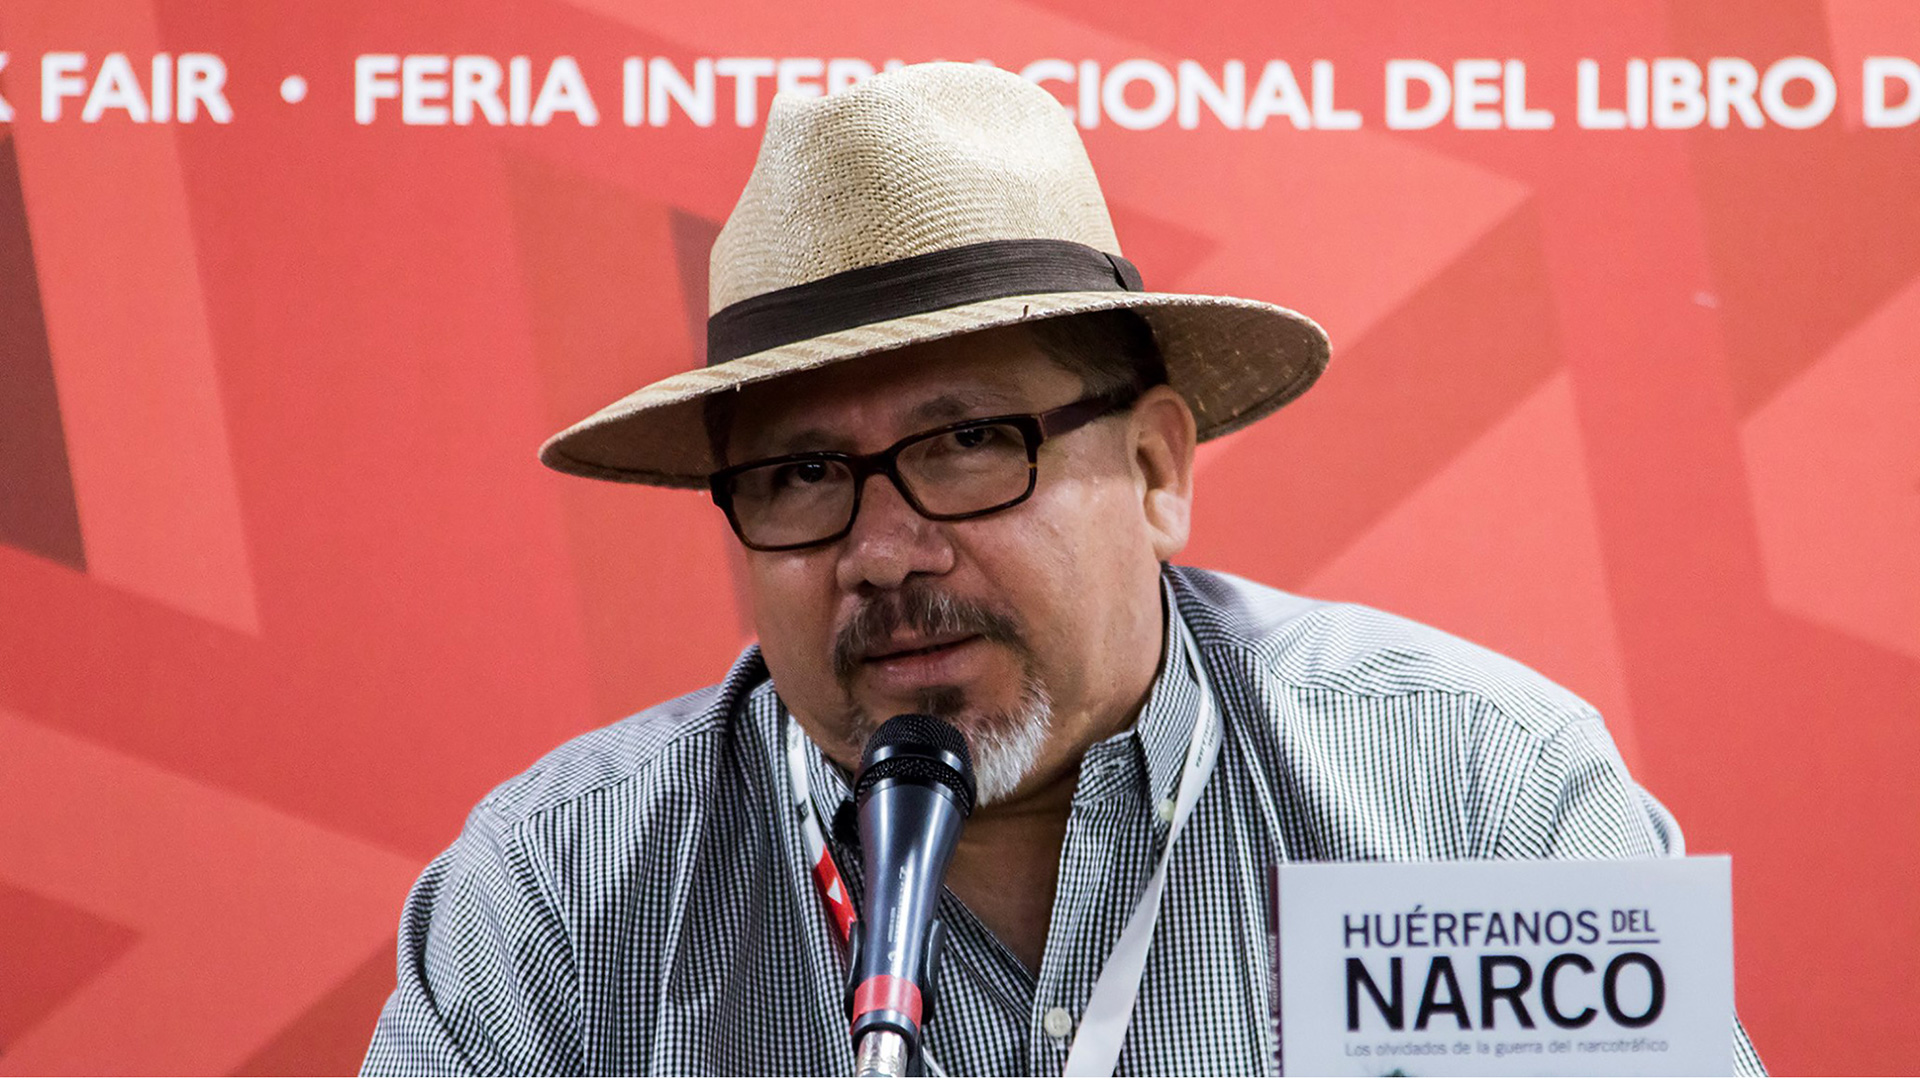 Asesinado en México el periodista Javier Valdez, admirado cronista del narcotráfico